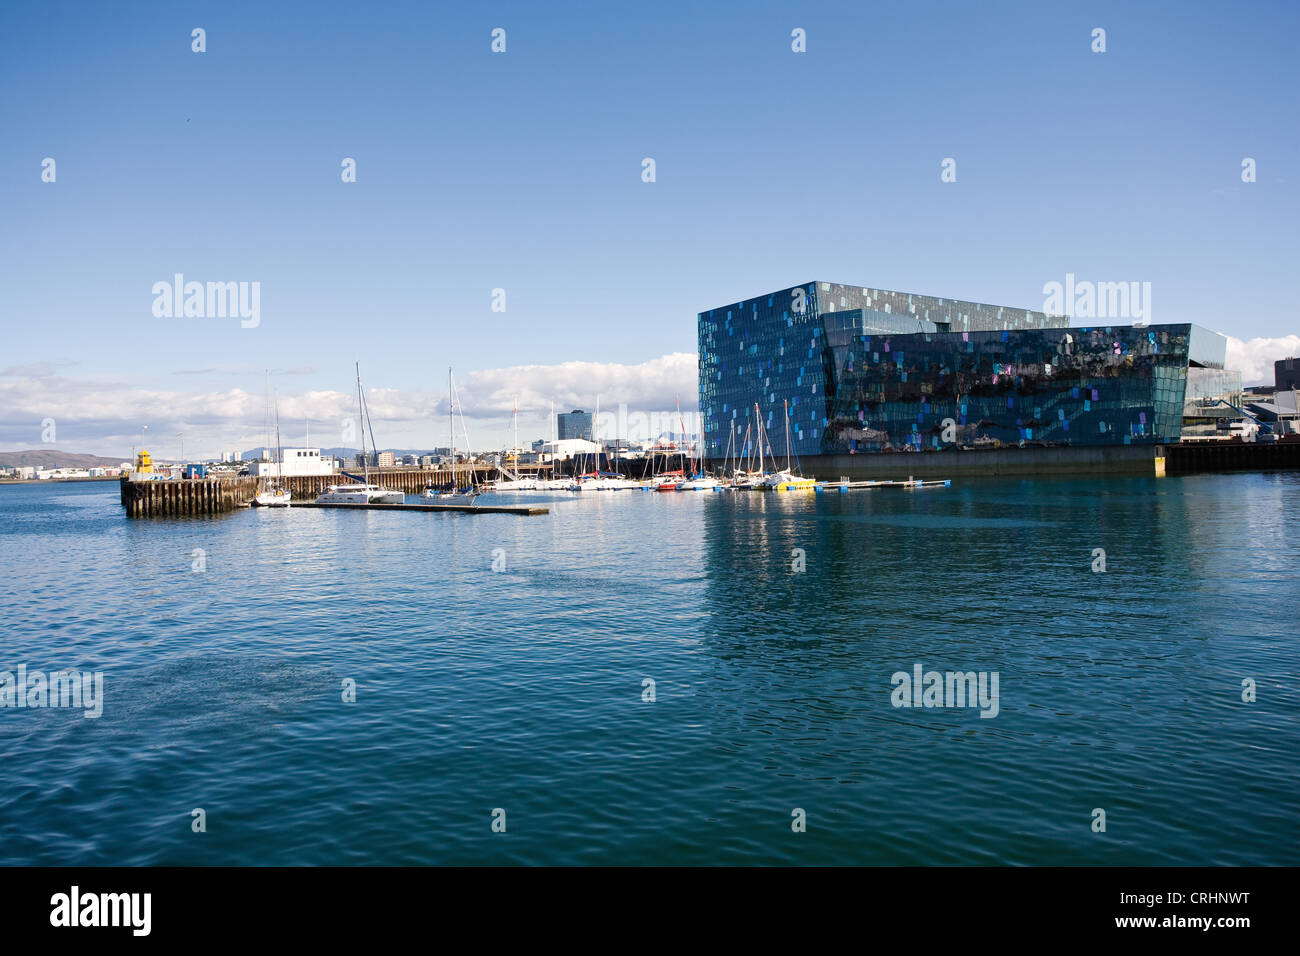 L'Islande, Reykjavik, Harpa Concert Hall et marina vue du port Banque D'Images